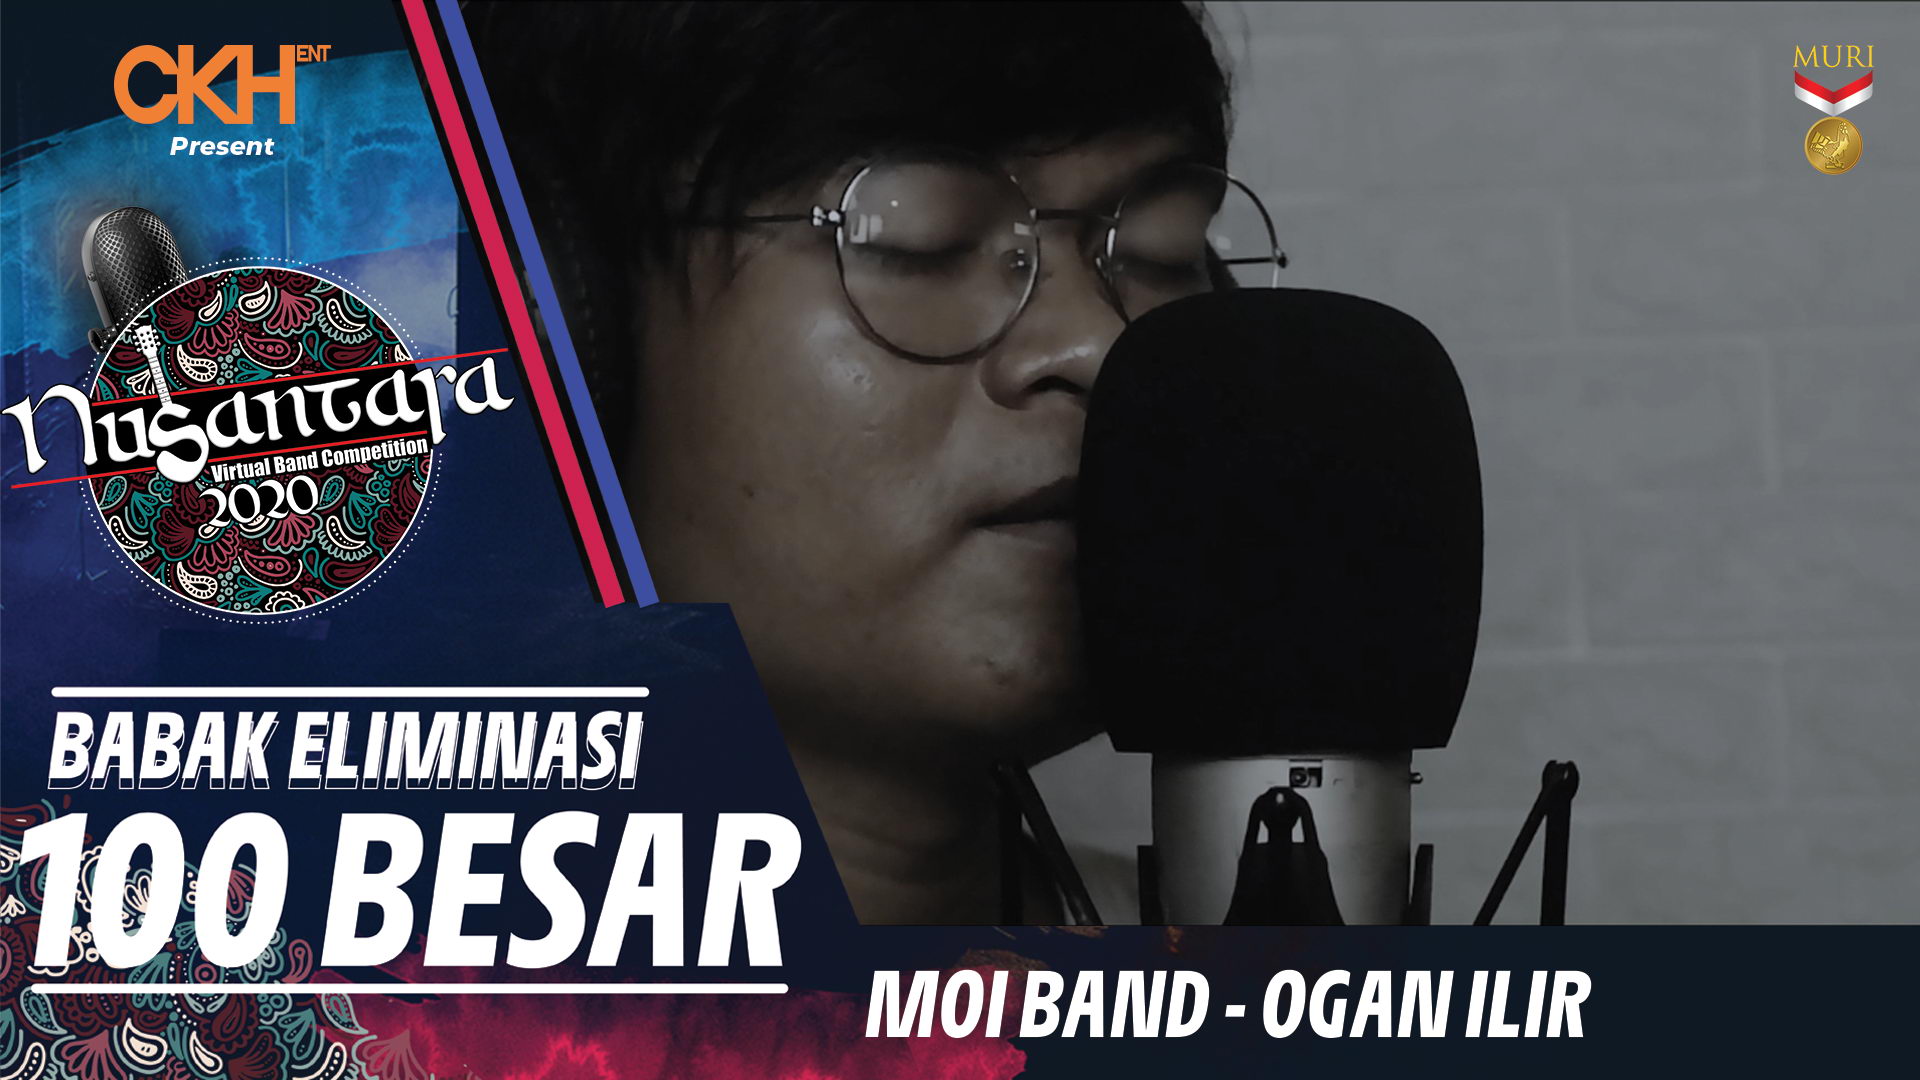 MOI Band - Eliminasi 100 Besar Nusantara Virtual Band Competition